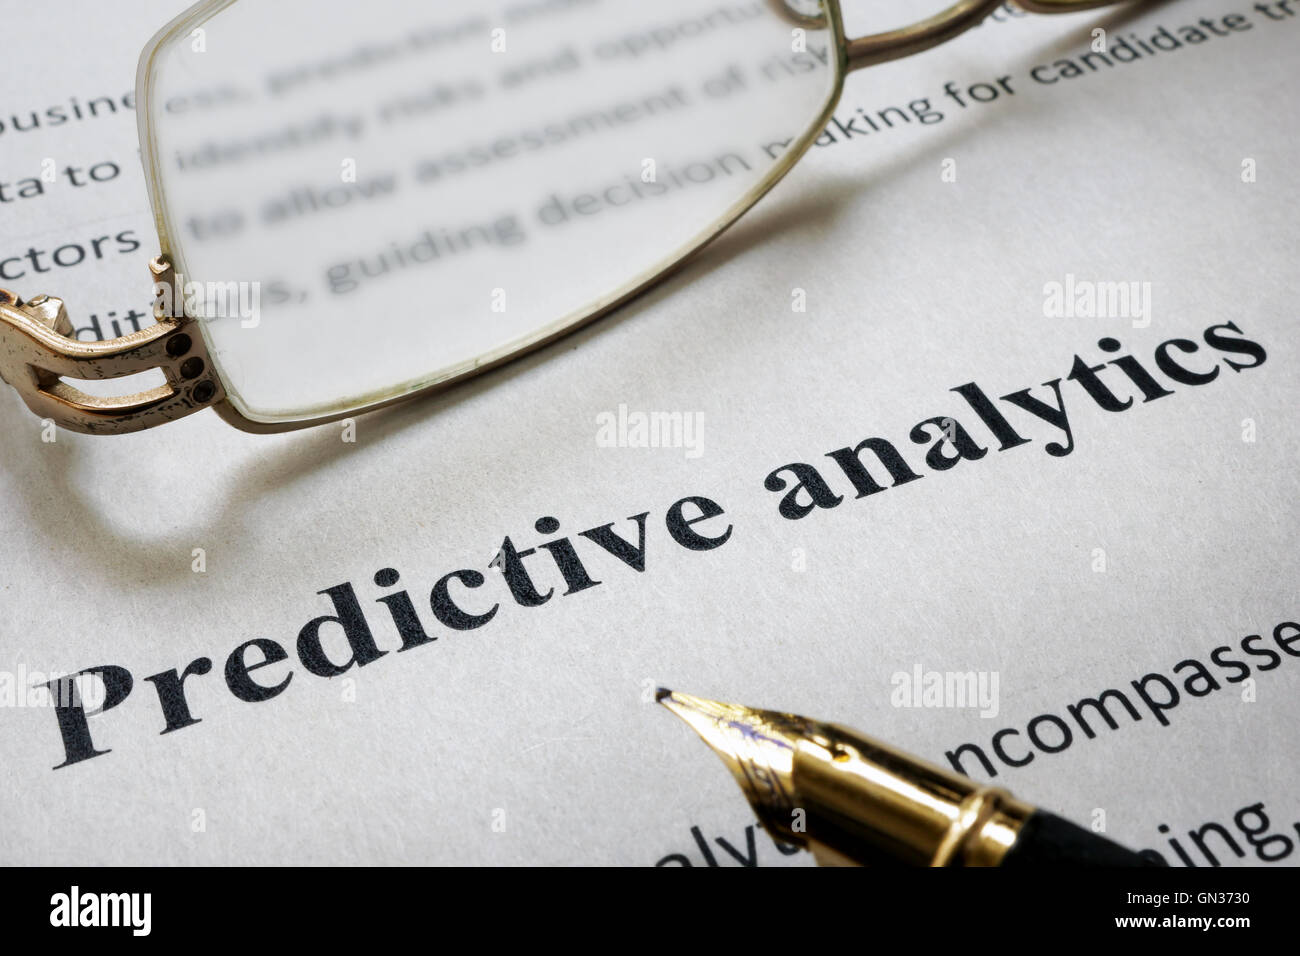 Seite des Papiers mit Worten Predictive Analytics und Gläser. Stockfoto